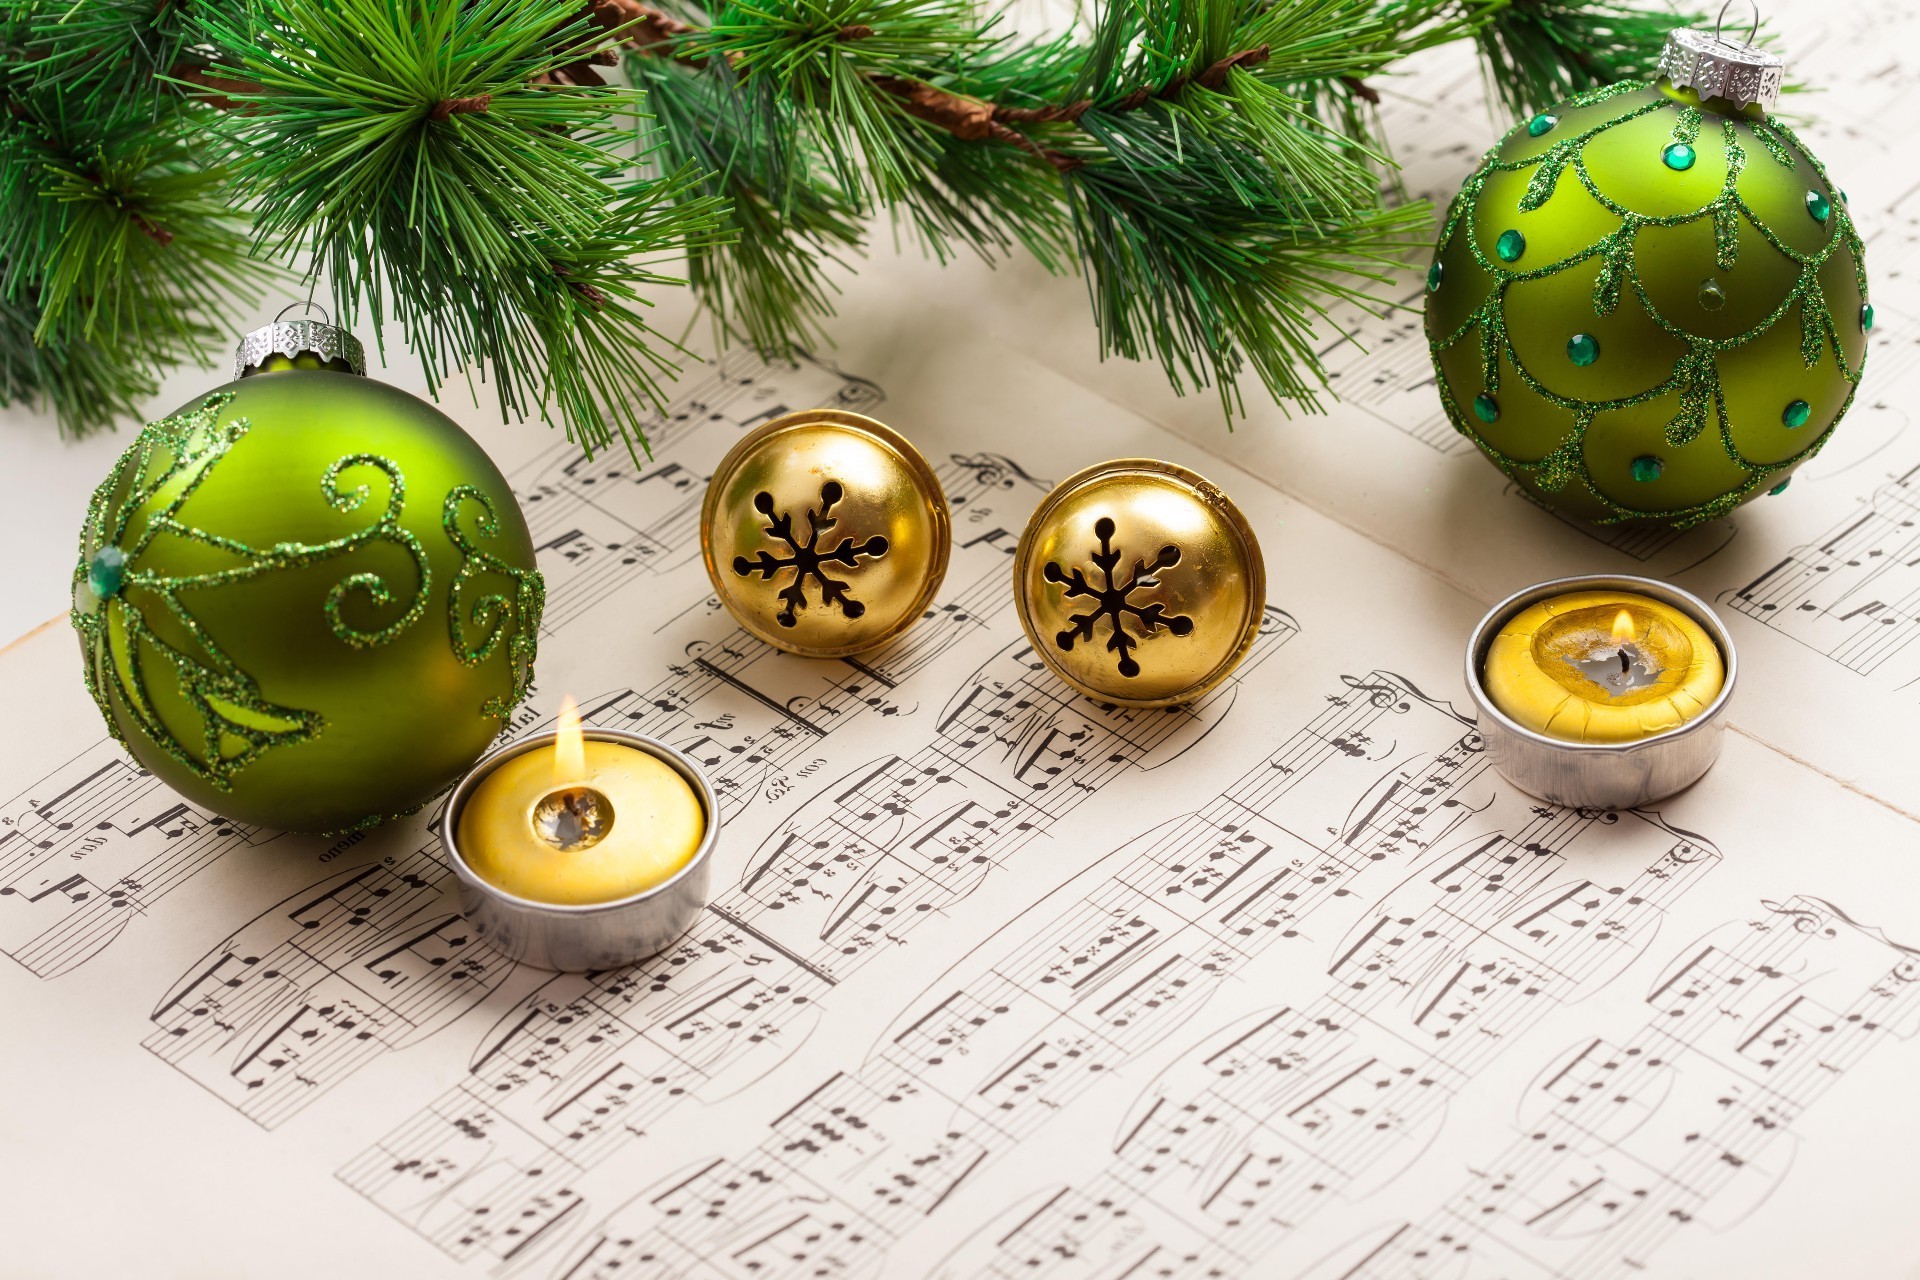 новый год мяч рождество сфера зима праздник украшения золото светит браслет сезон карта сосна традиционные цвет мерри нить